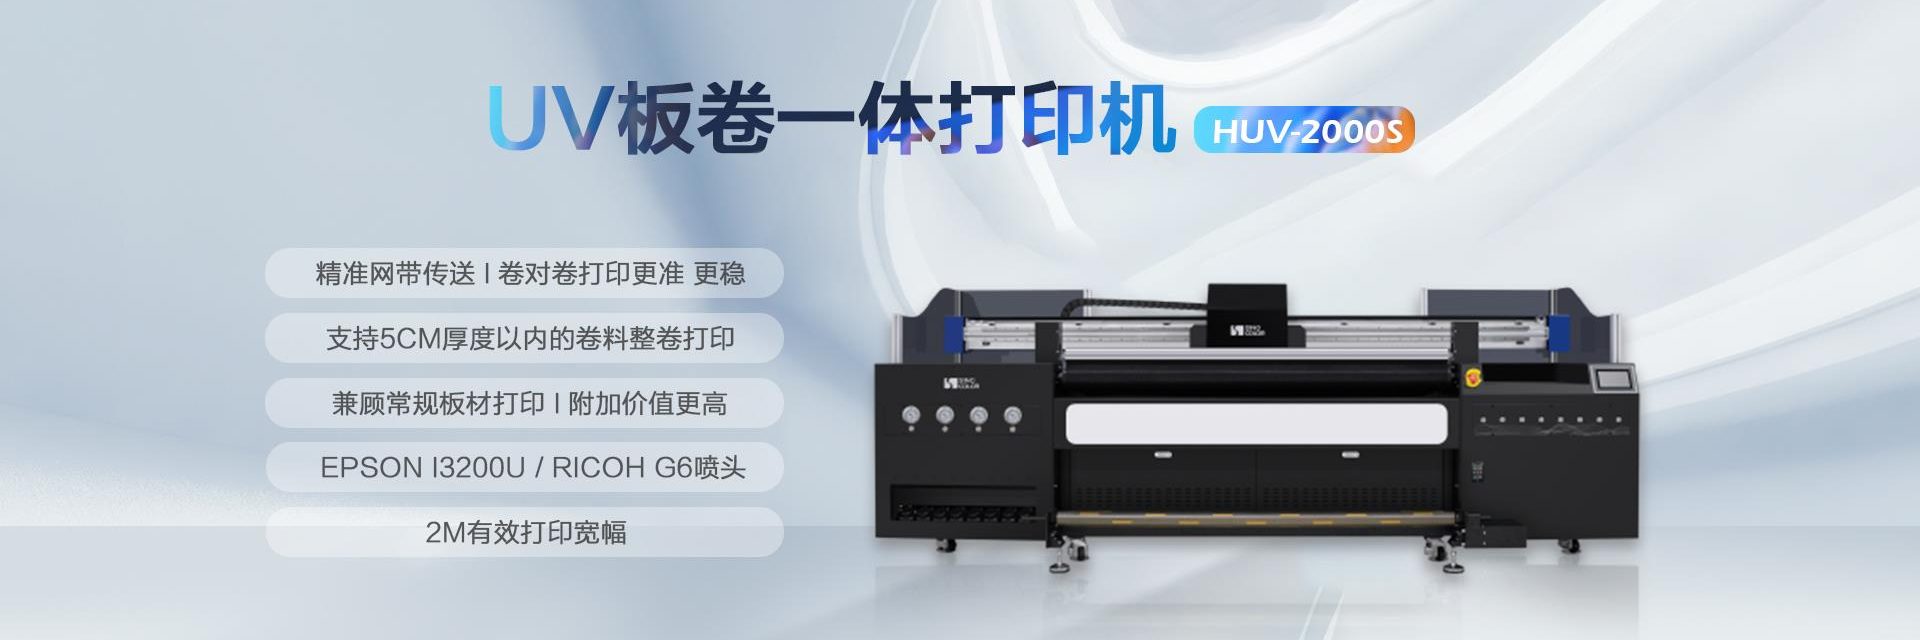 UV卷板一体打印机 HUV-2000S image